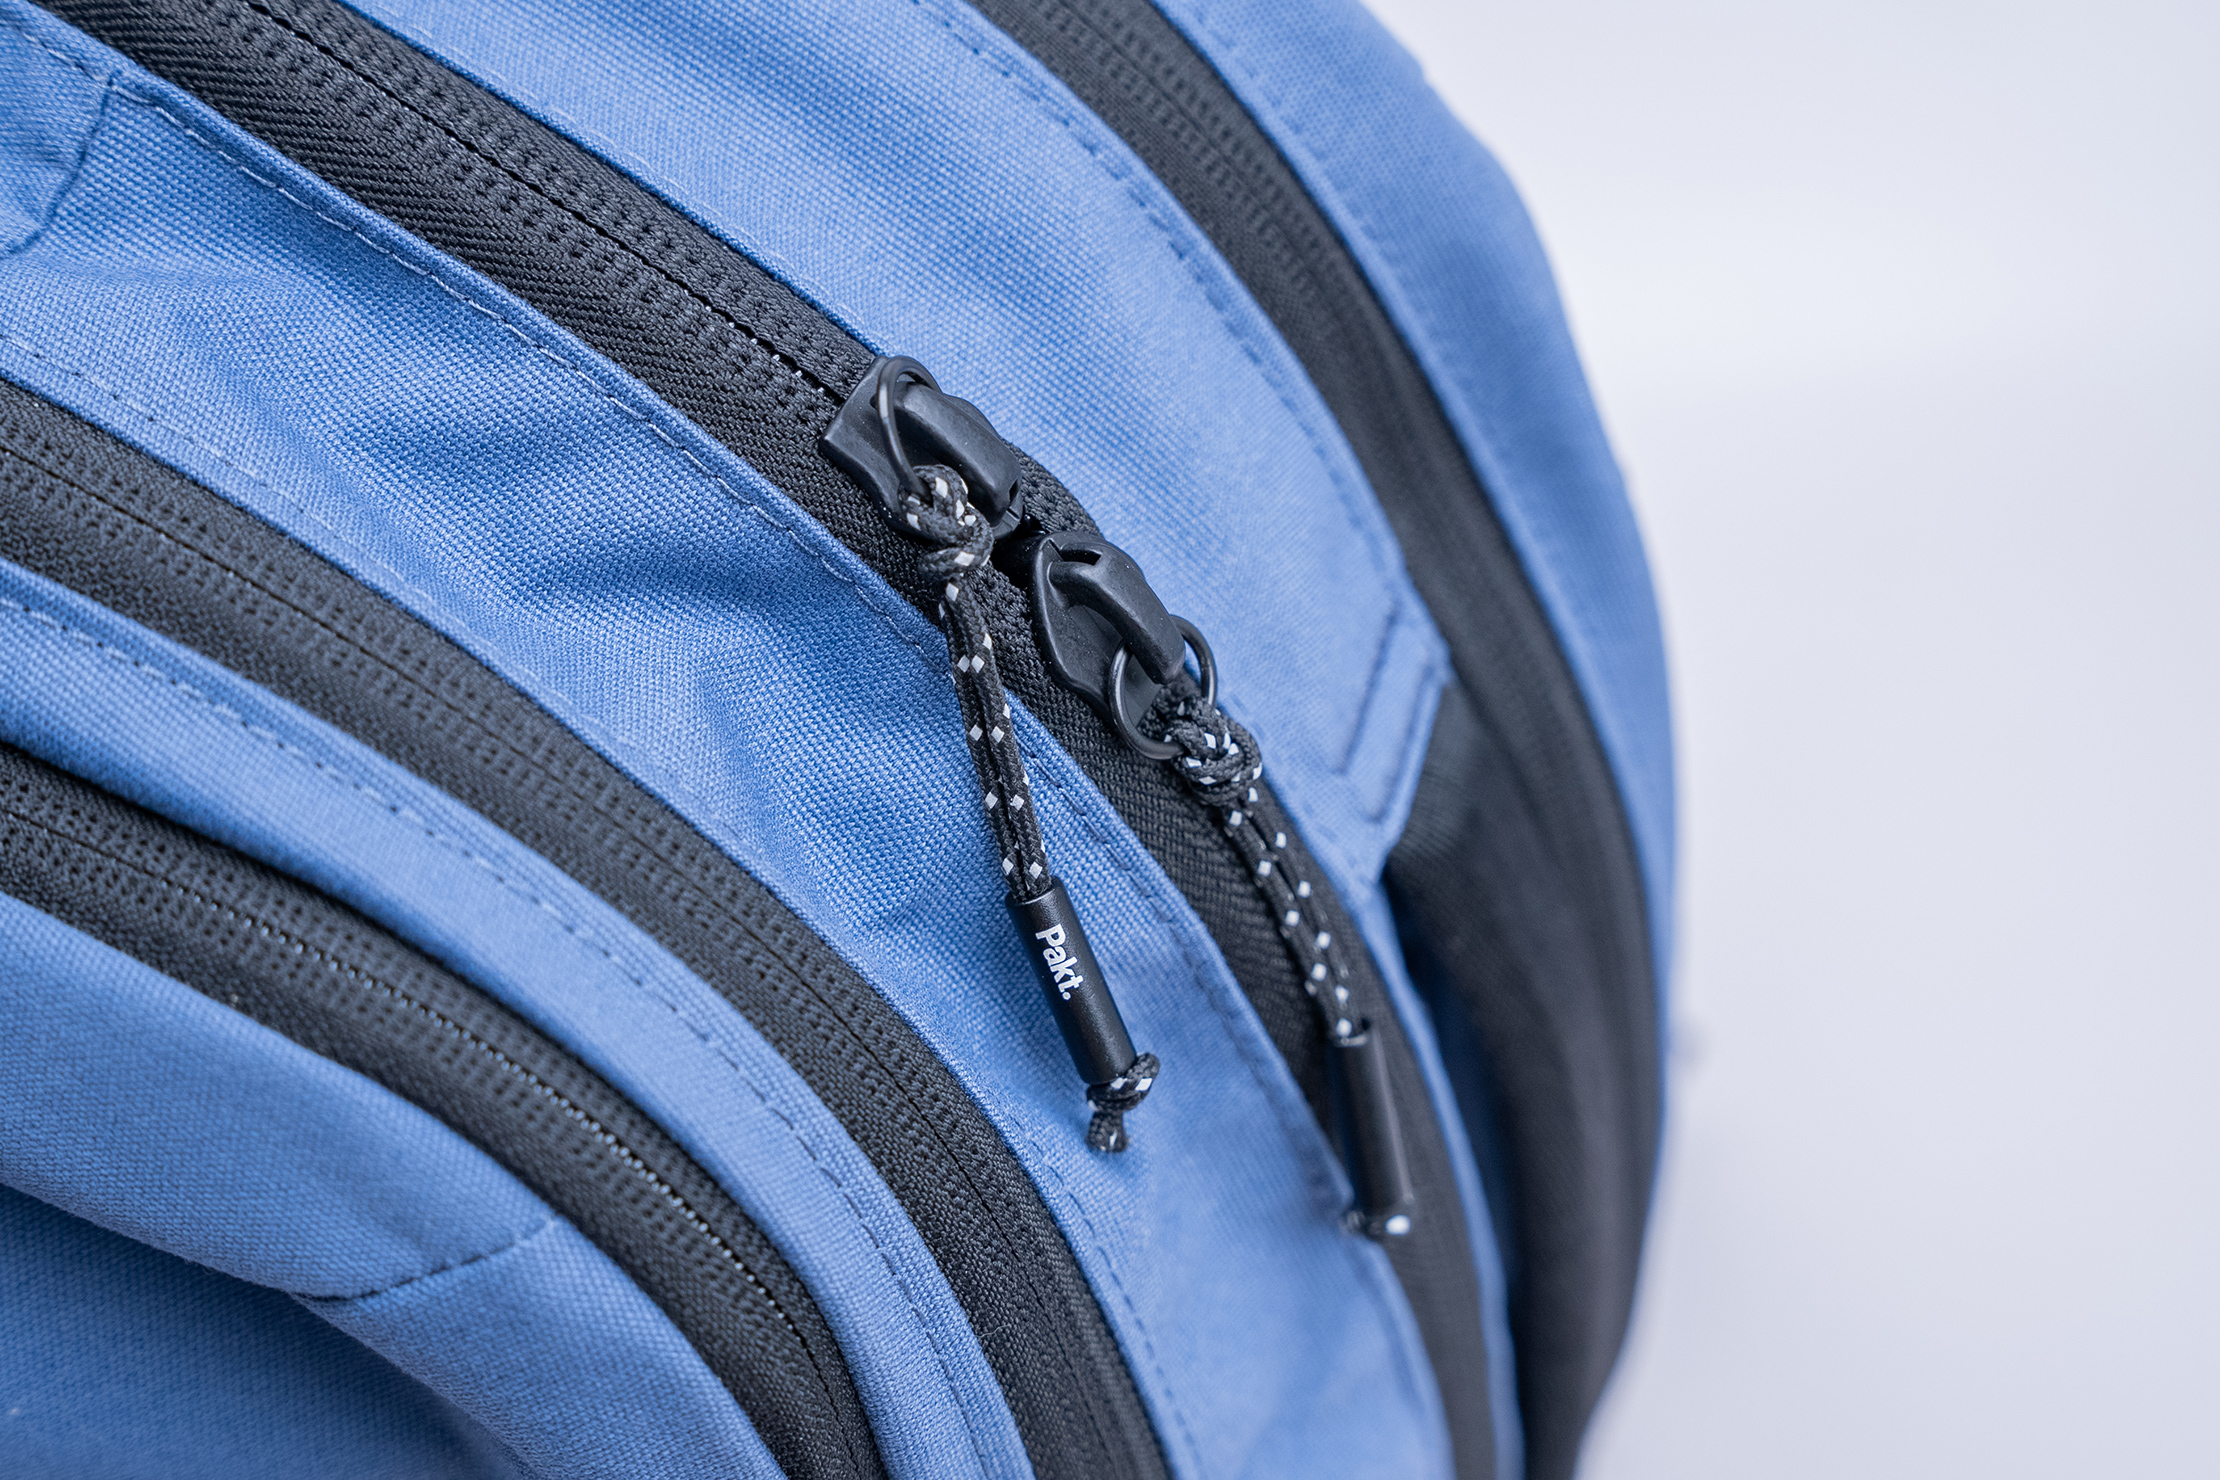 Pakt Travel Backpack V2 (35L) Zipper Pull